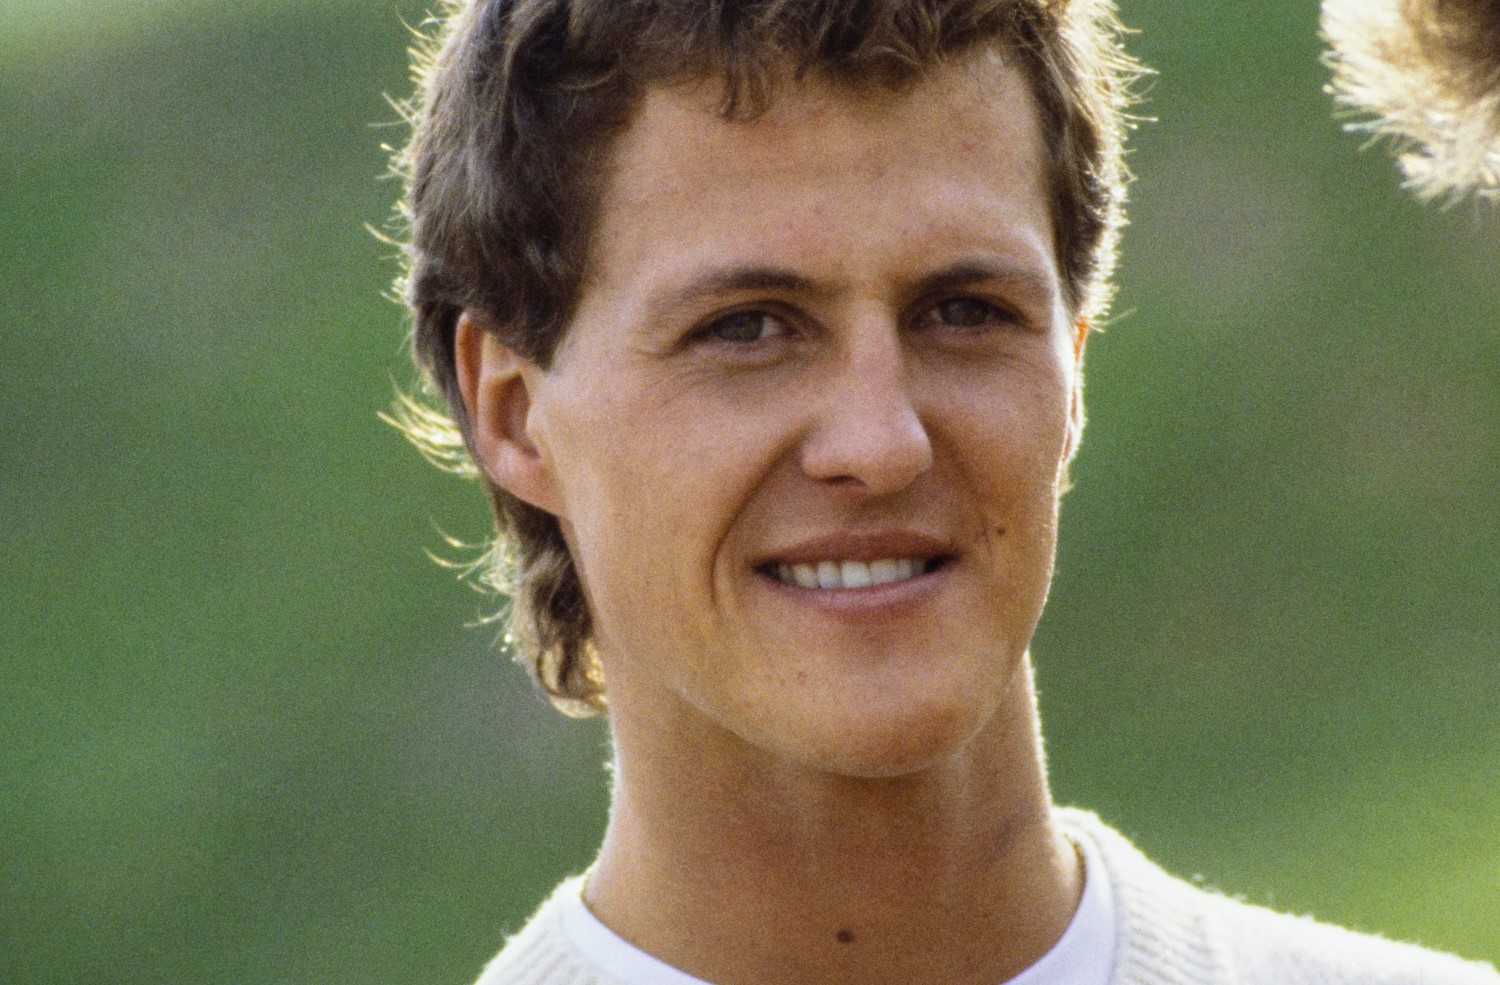 A young Michael Schumacher